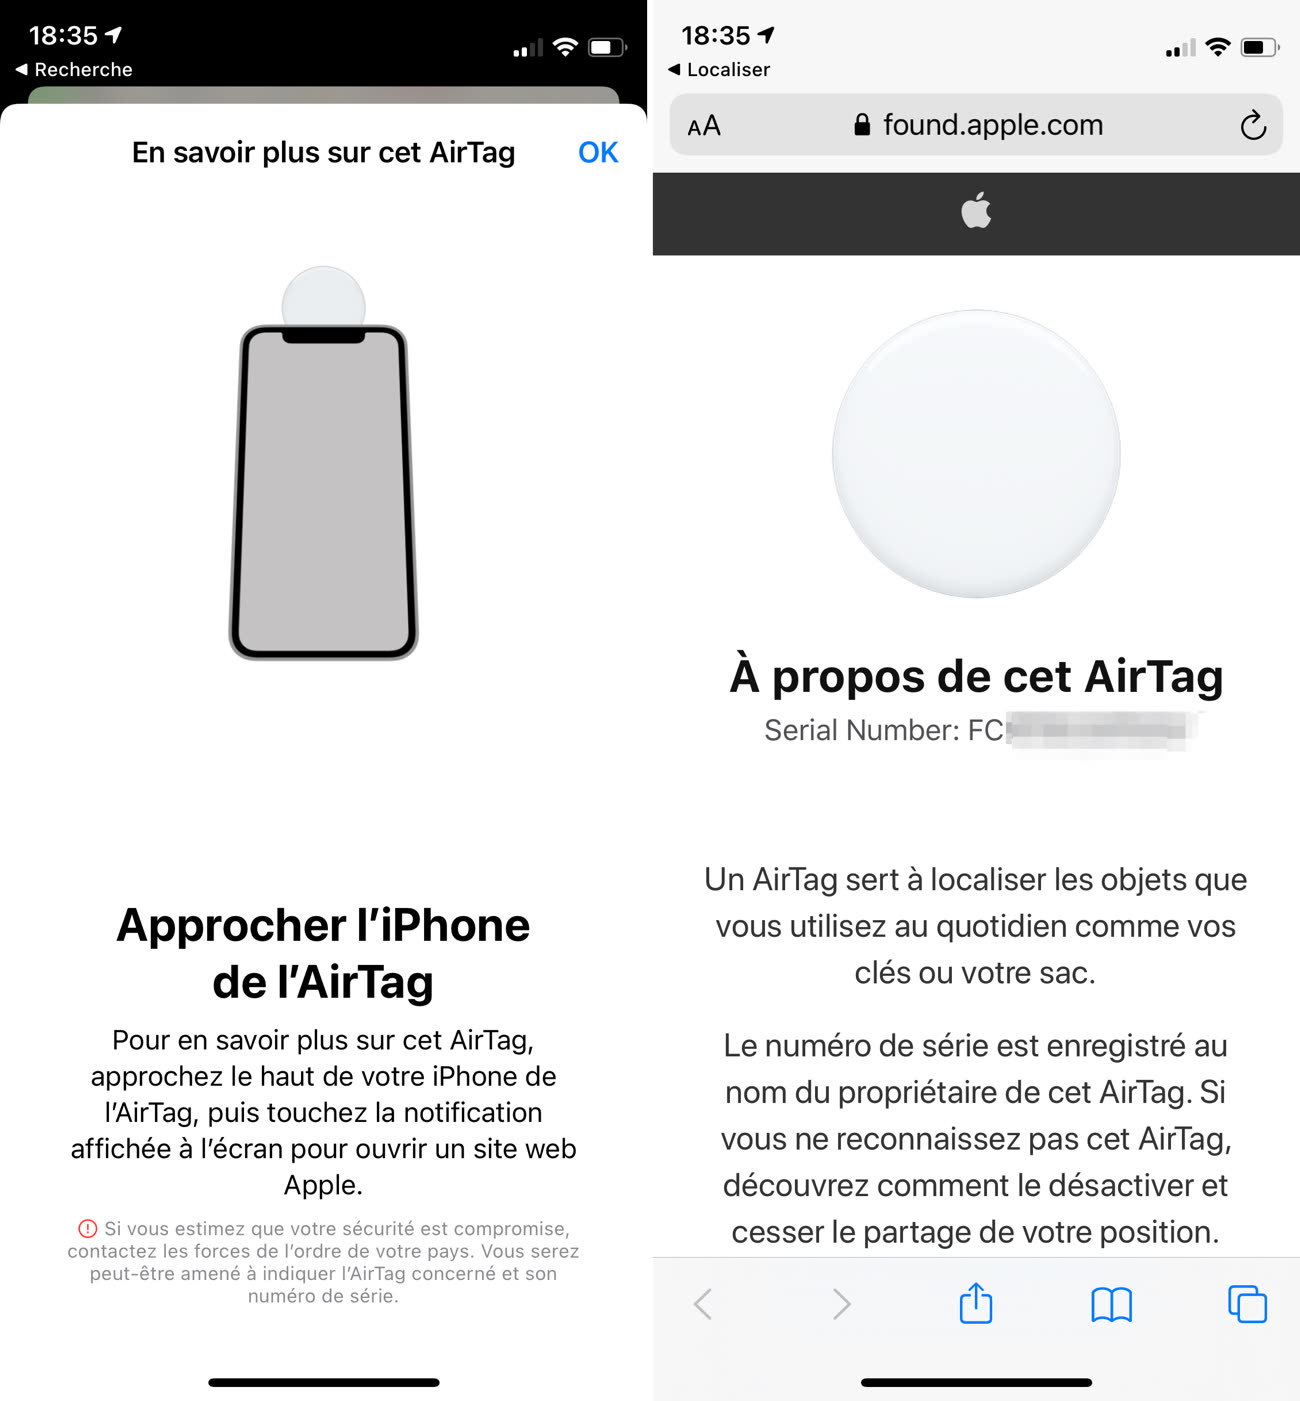 Le Parisien a testé : les AirTags d'Apple, un accessoire aussi